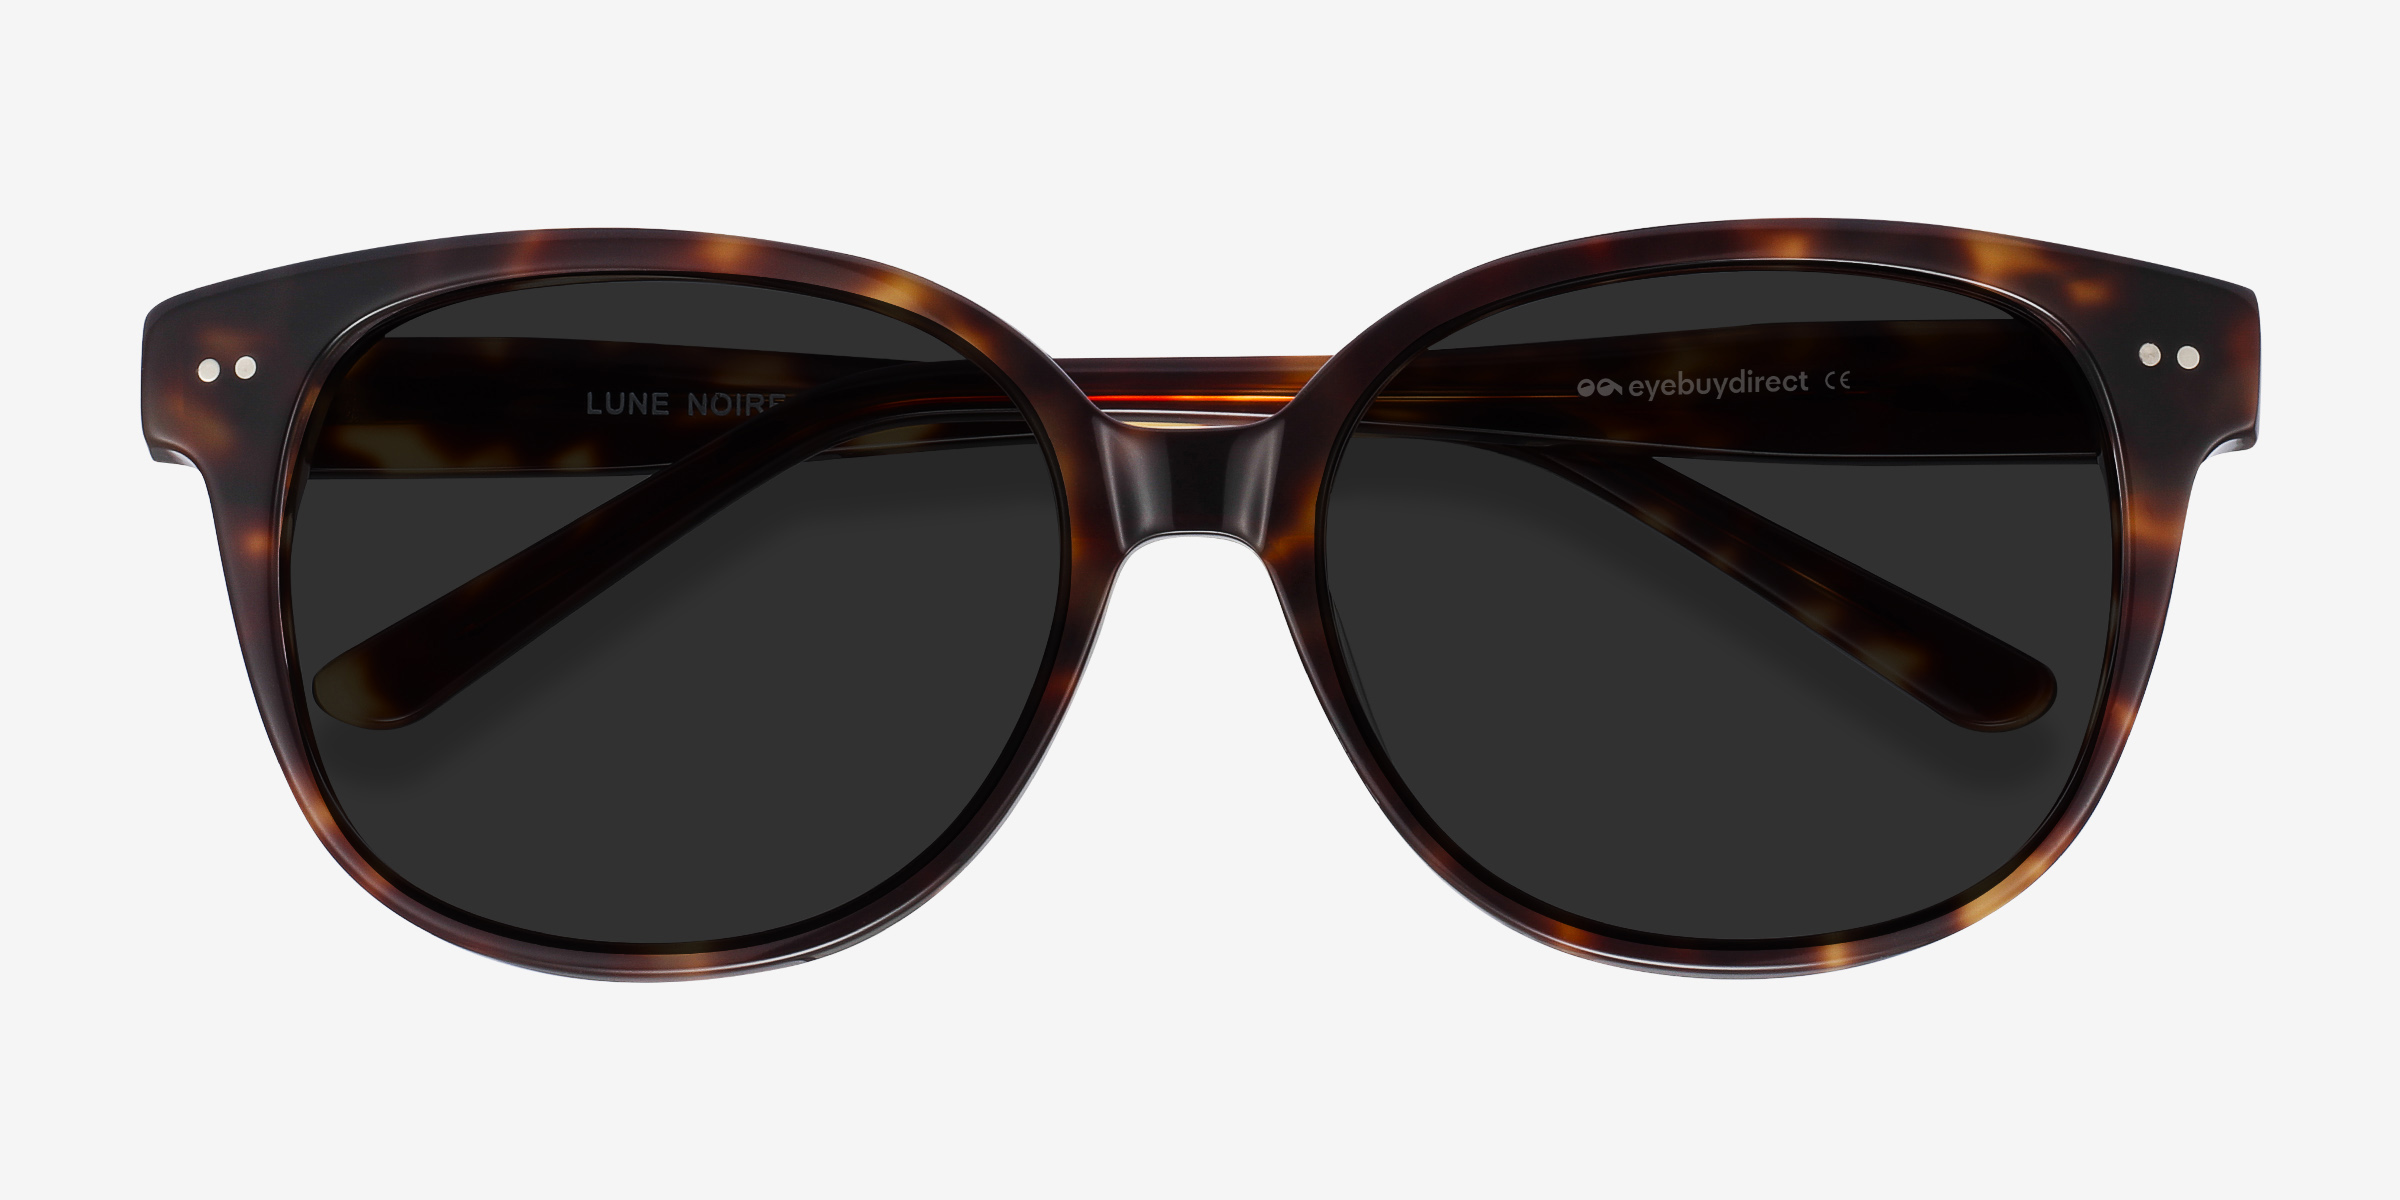 Lune Noire - Cat Eye Tortoise Frame Sunglasses For Women | Eyebuydirect